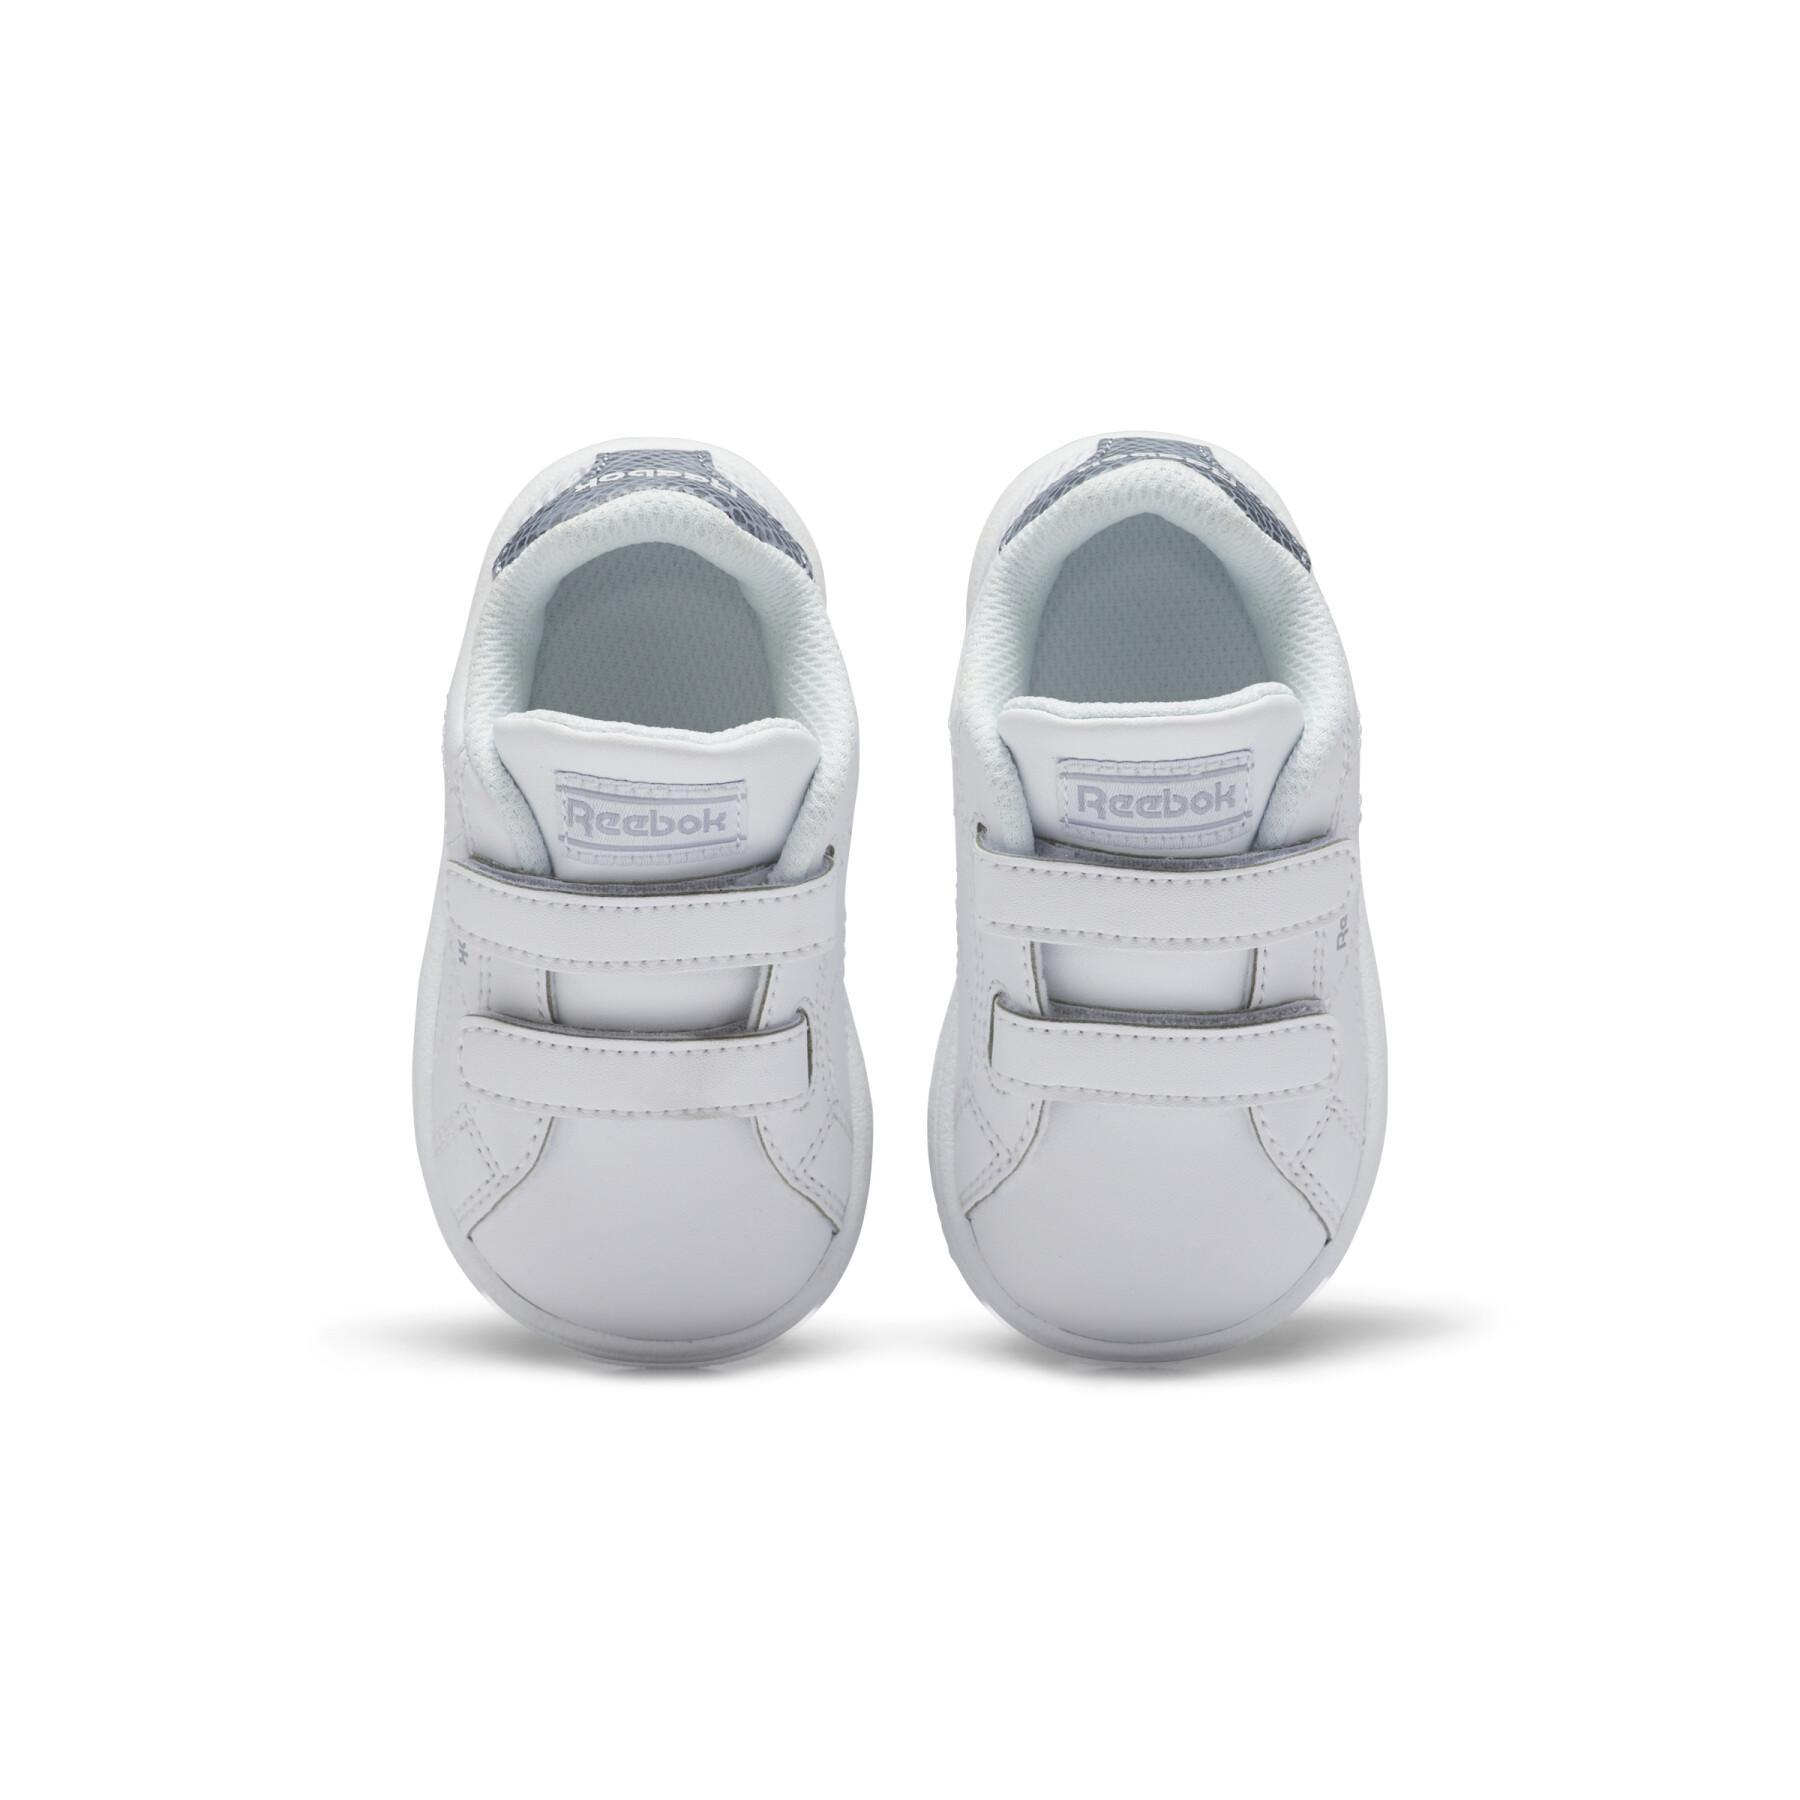 Kid Sneakers Reebok Complete Schone Alt 2.0